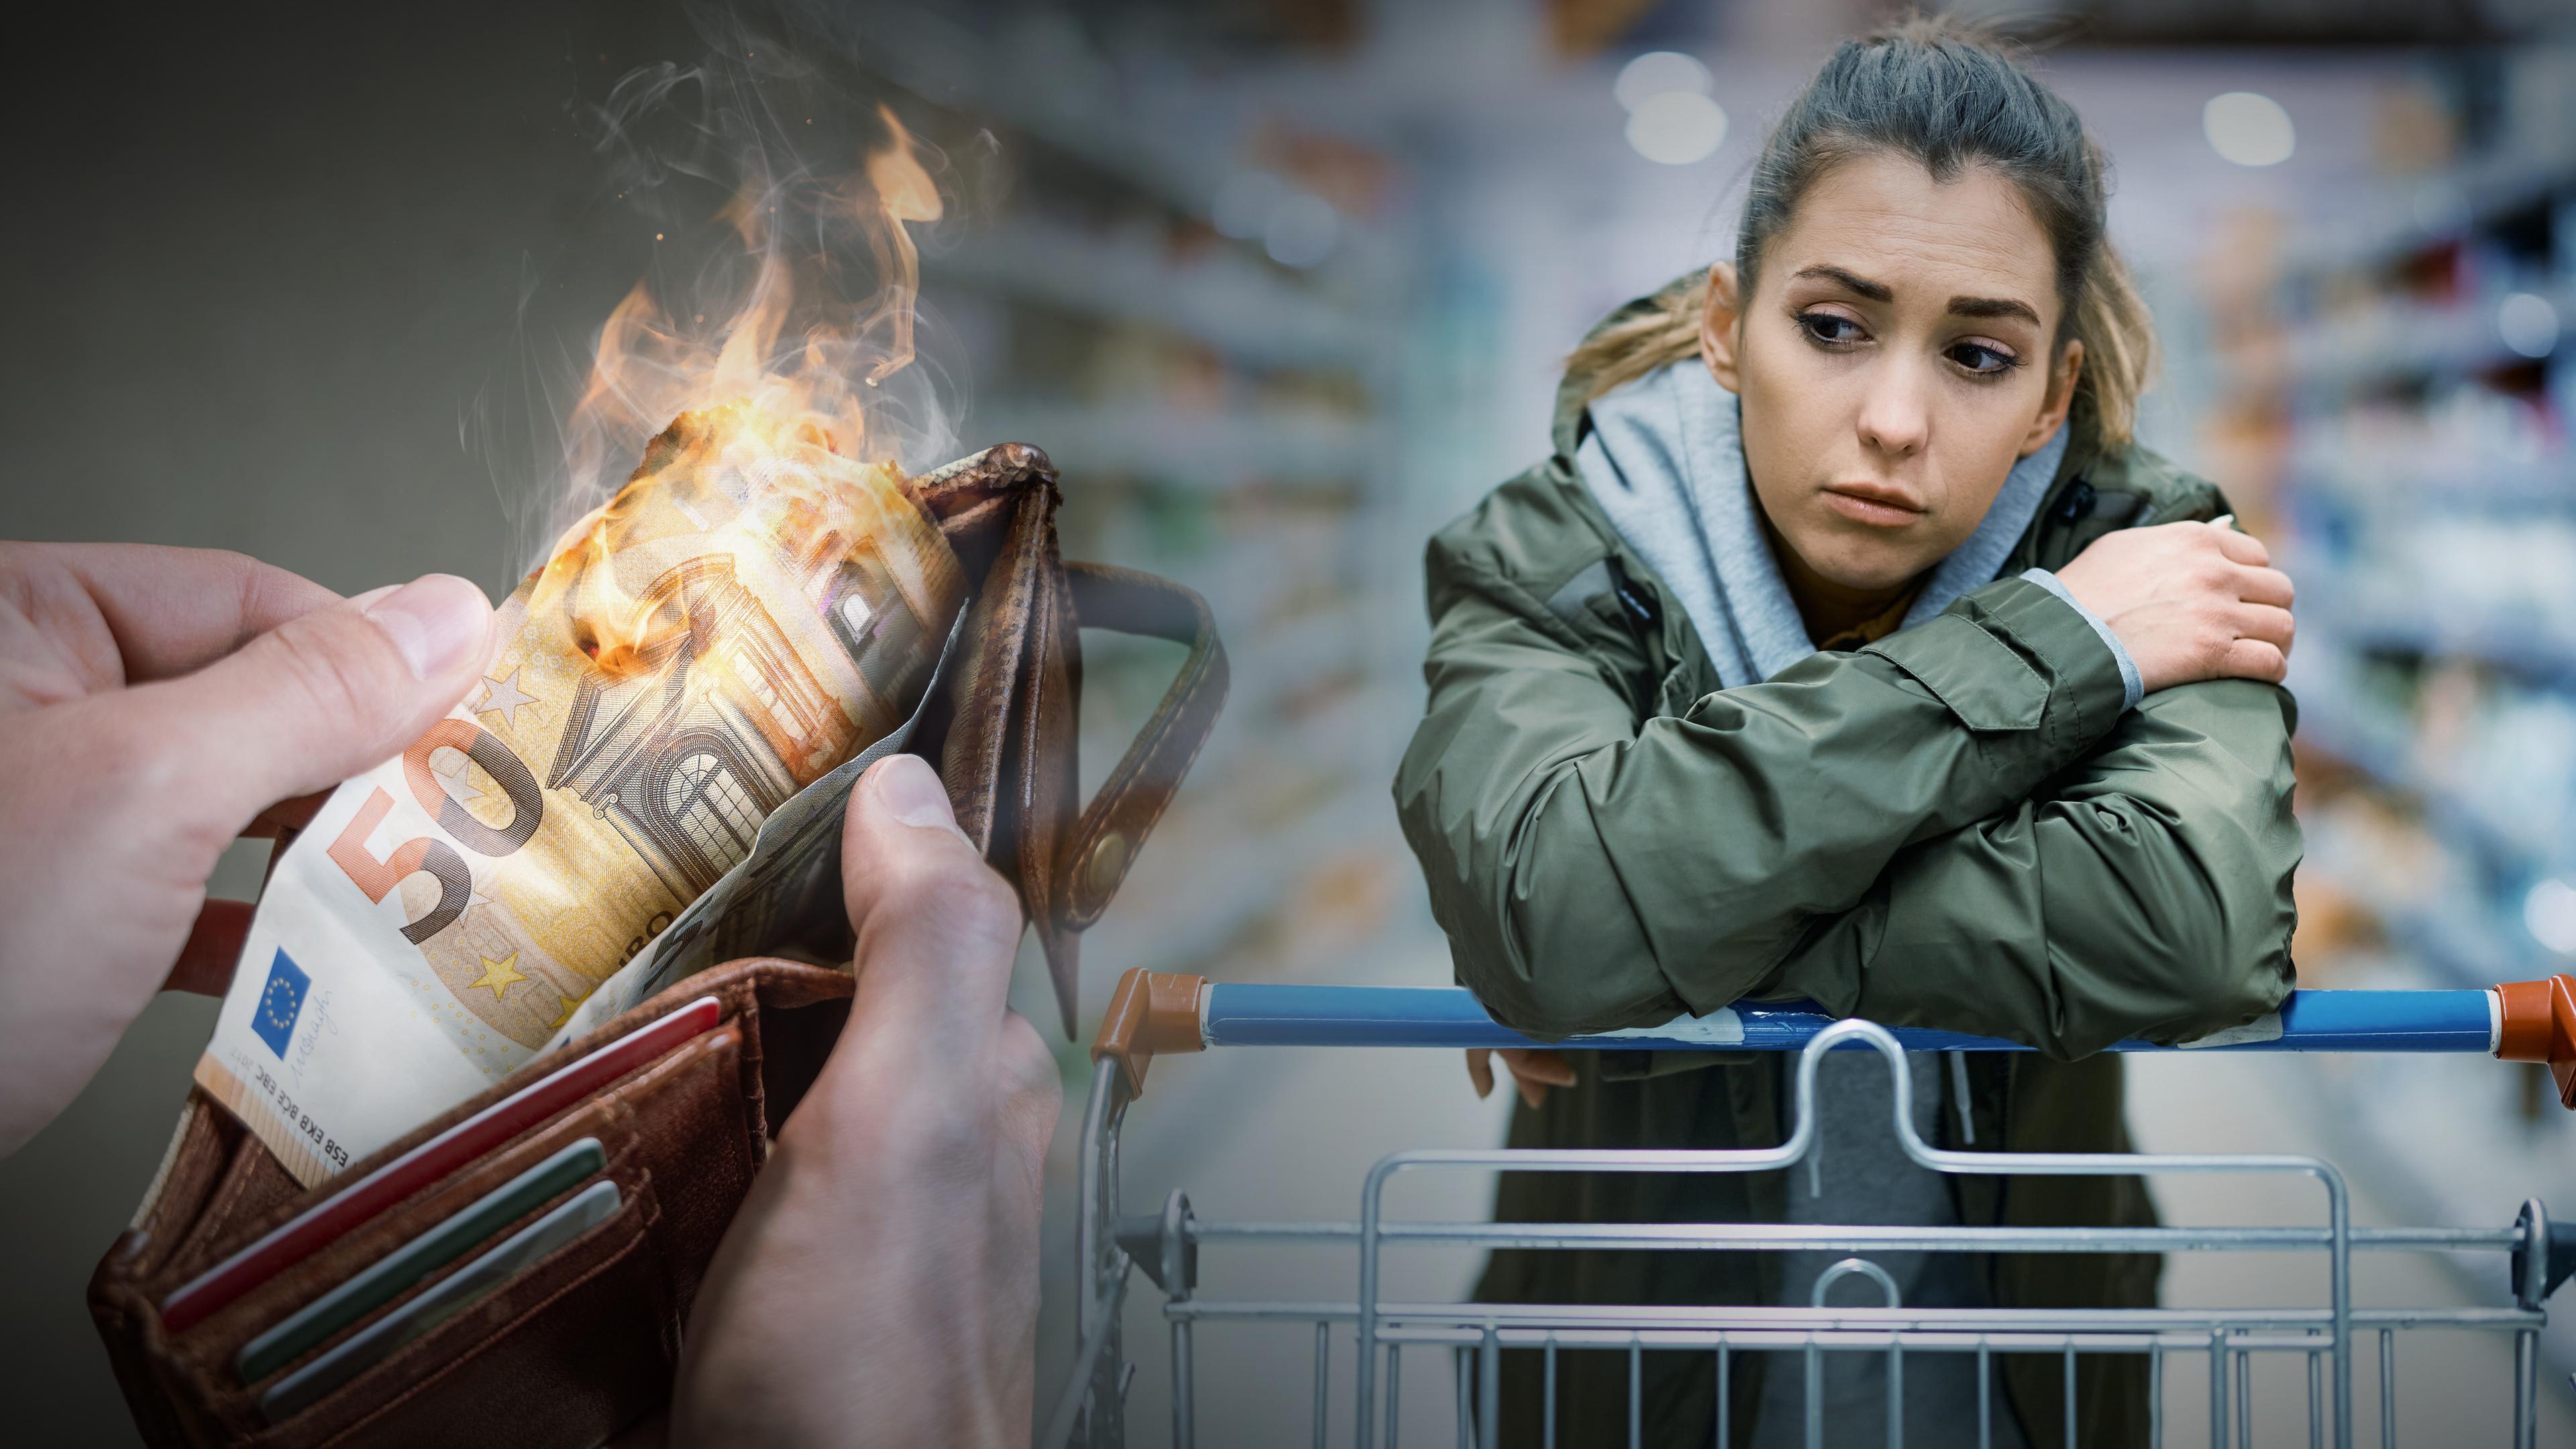  Links der Blick auf ein geöffnetes Portemonnaie, in dem ein 50€-Schein brennt; rechts eine junge Frau, die traurig/nachdenklich einen Einkaufswagen schiebt.